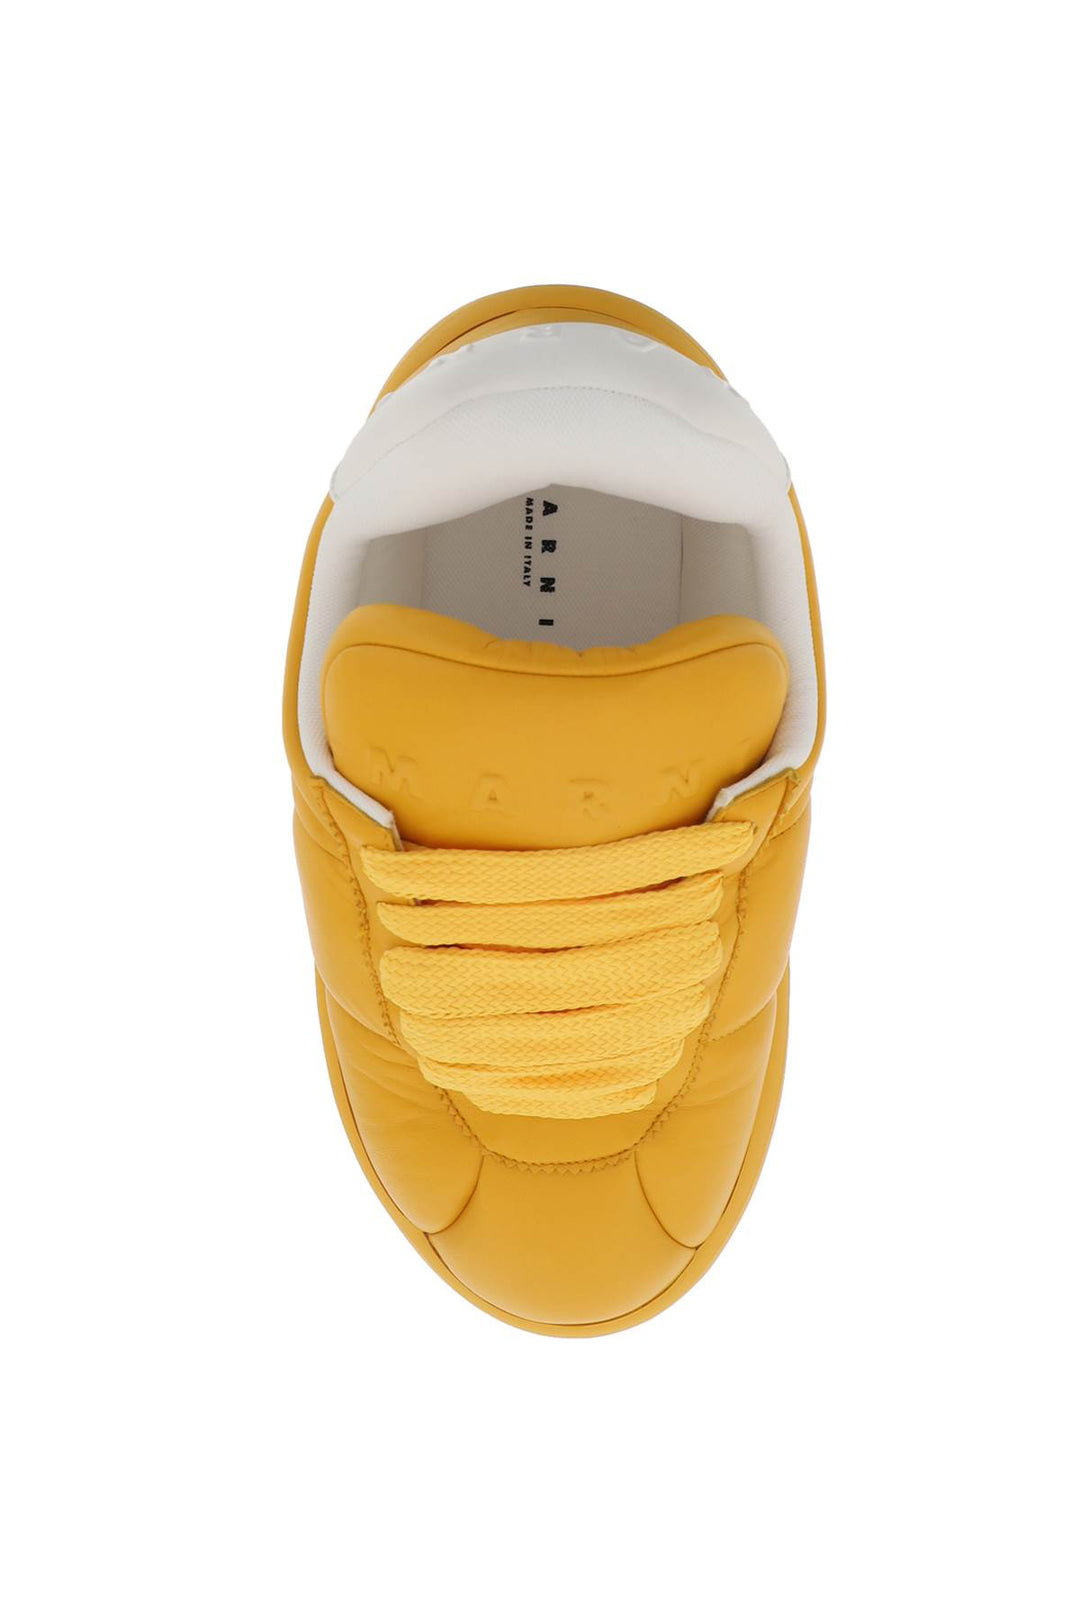 Marni Leather Bigfoot 2.0 Sneakers   Yellow